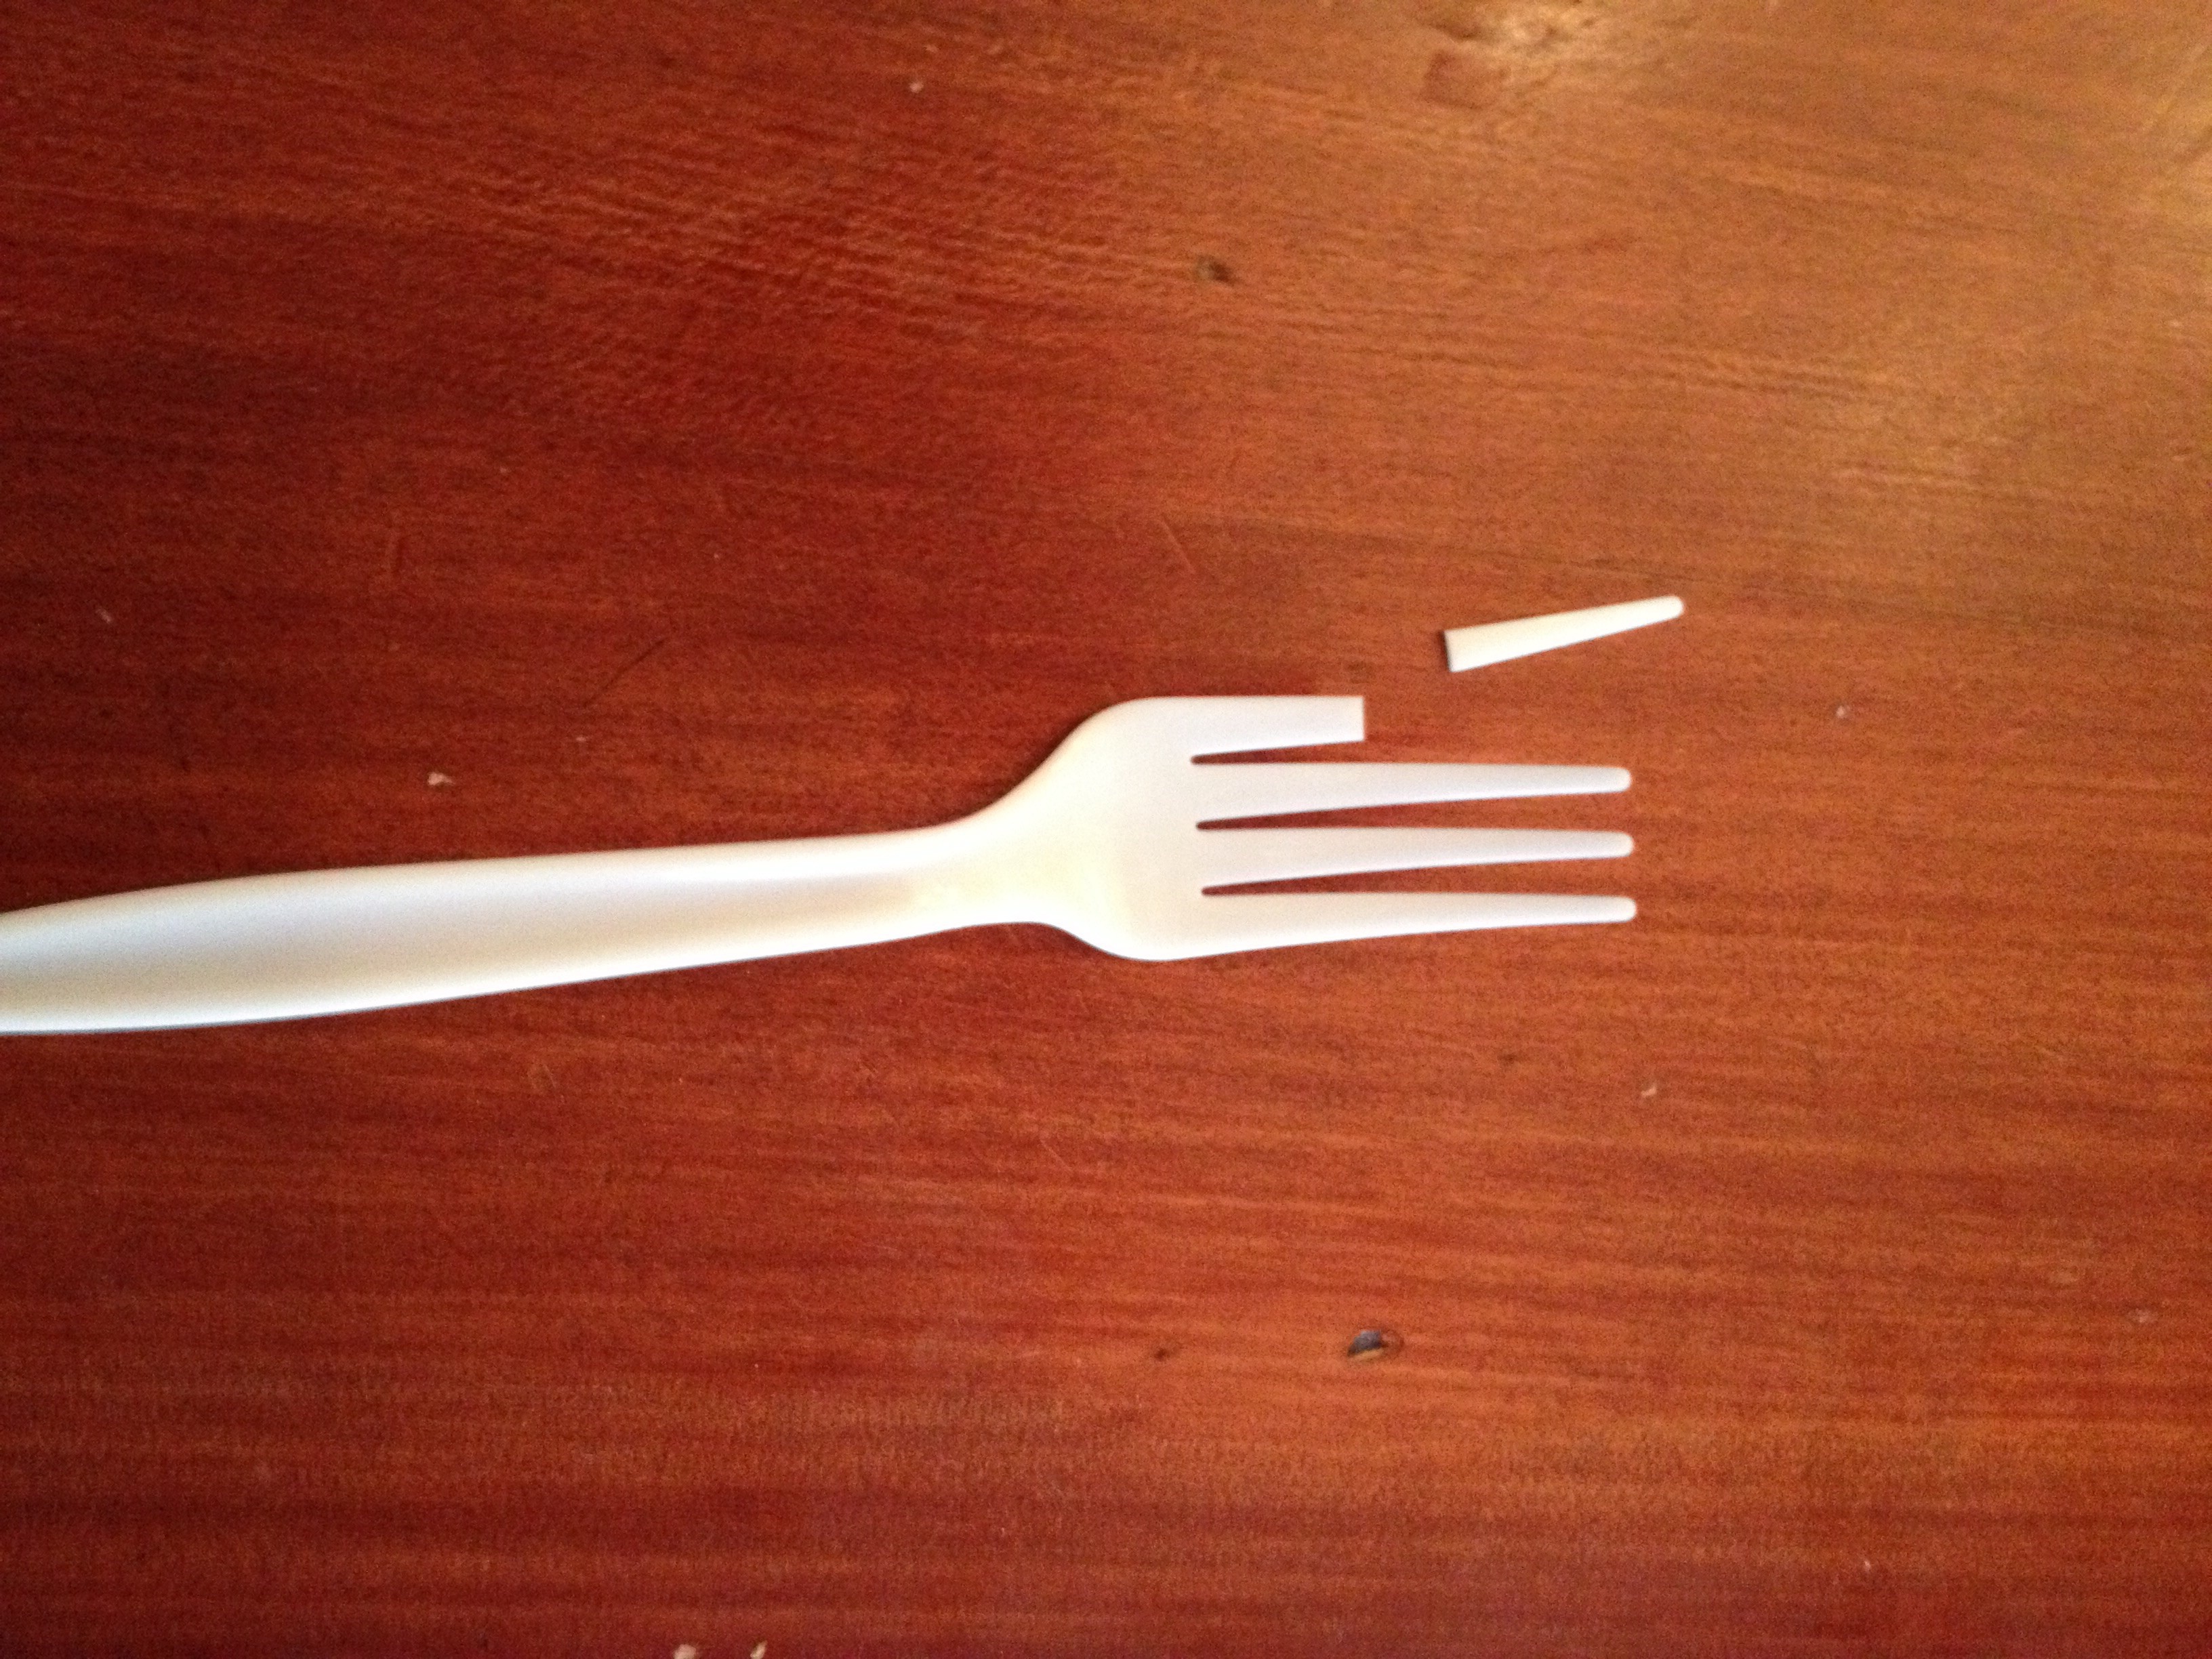 Broken fork